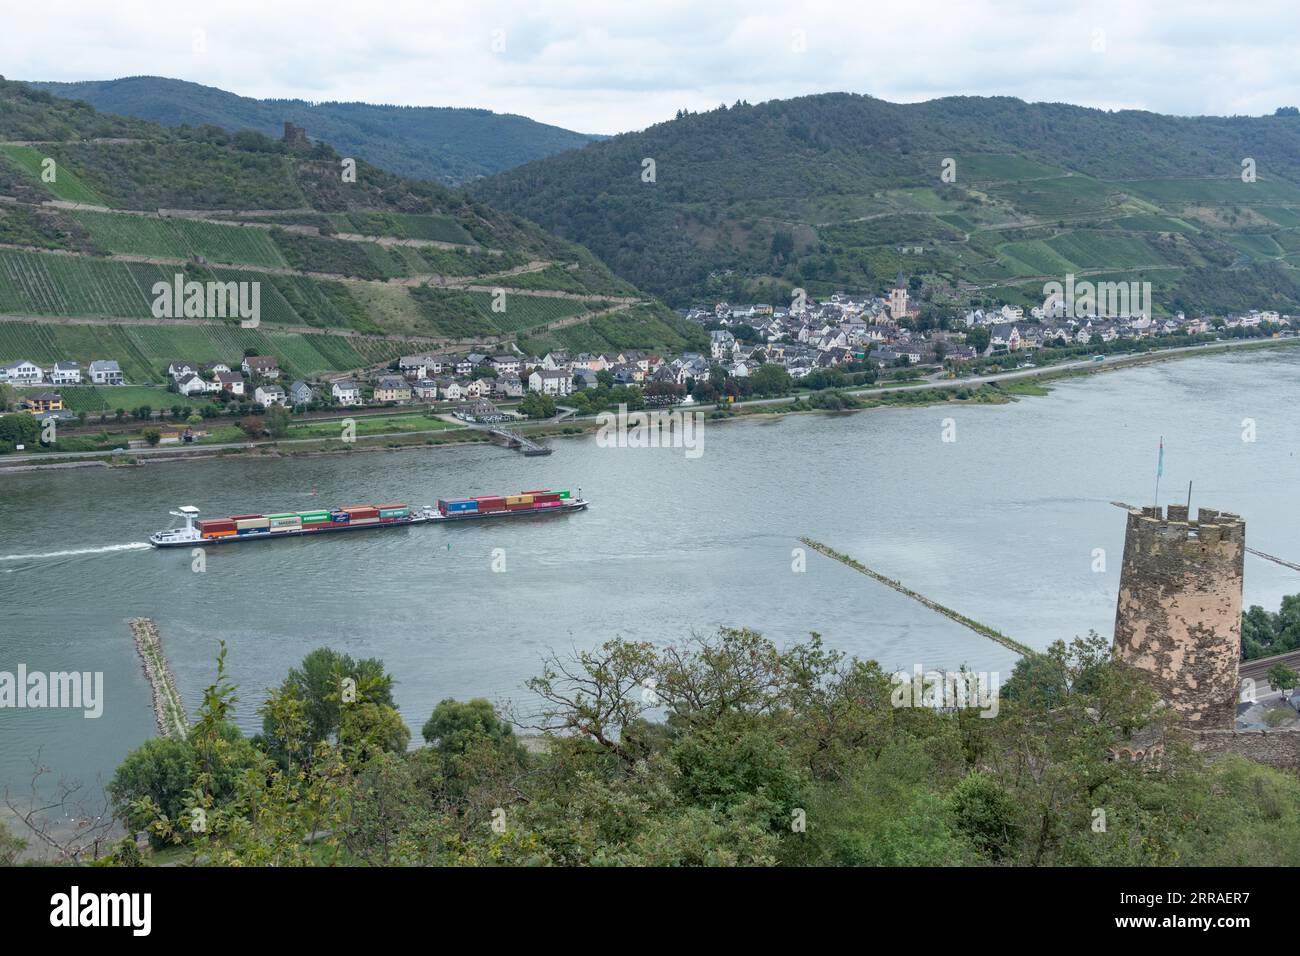 Les barges commerciales et autres trafics fluviaux longent le Rhin dans la région de Mayence-Bingen, en Allemagne Banque D'Images